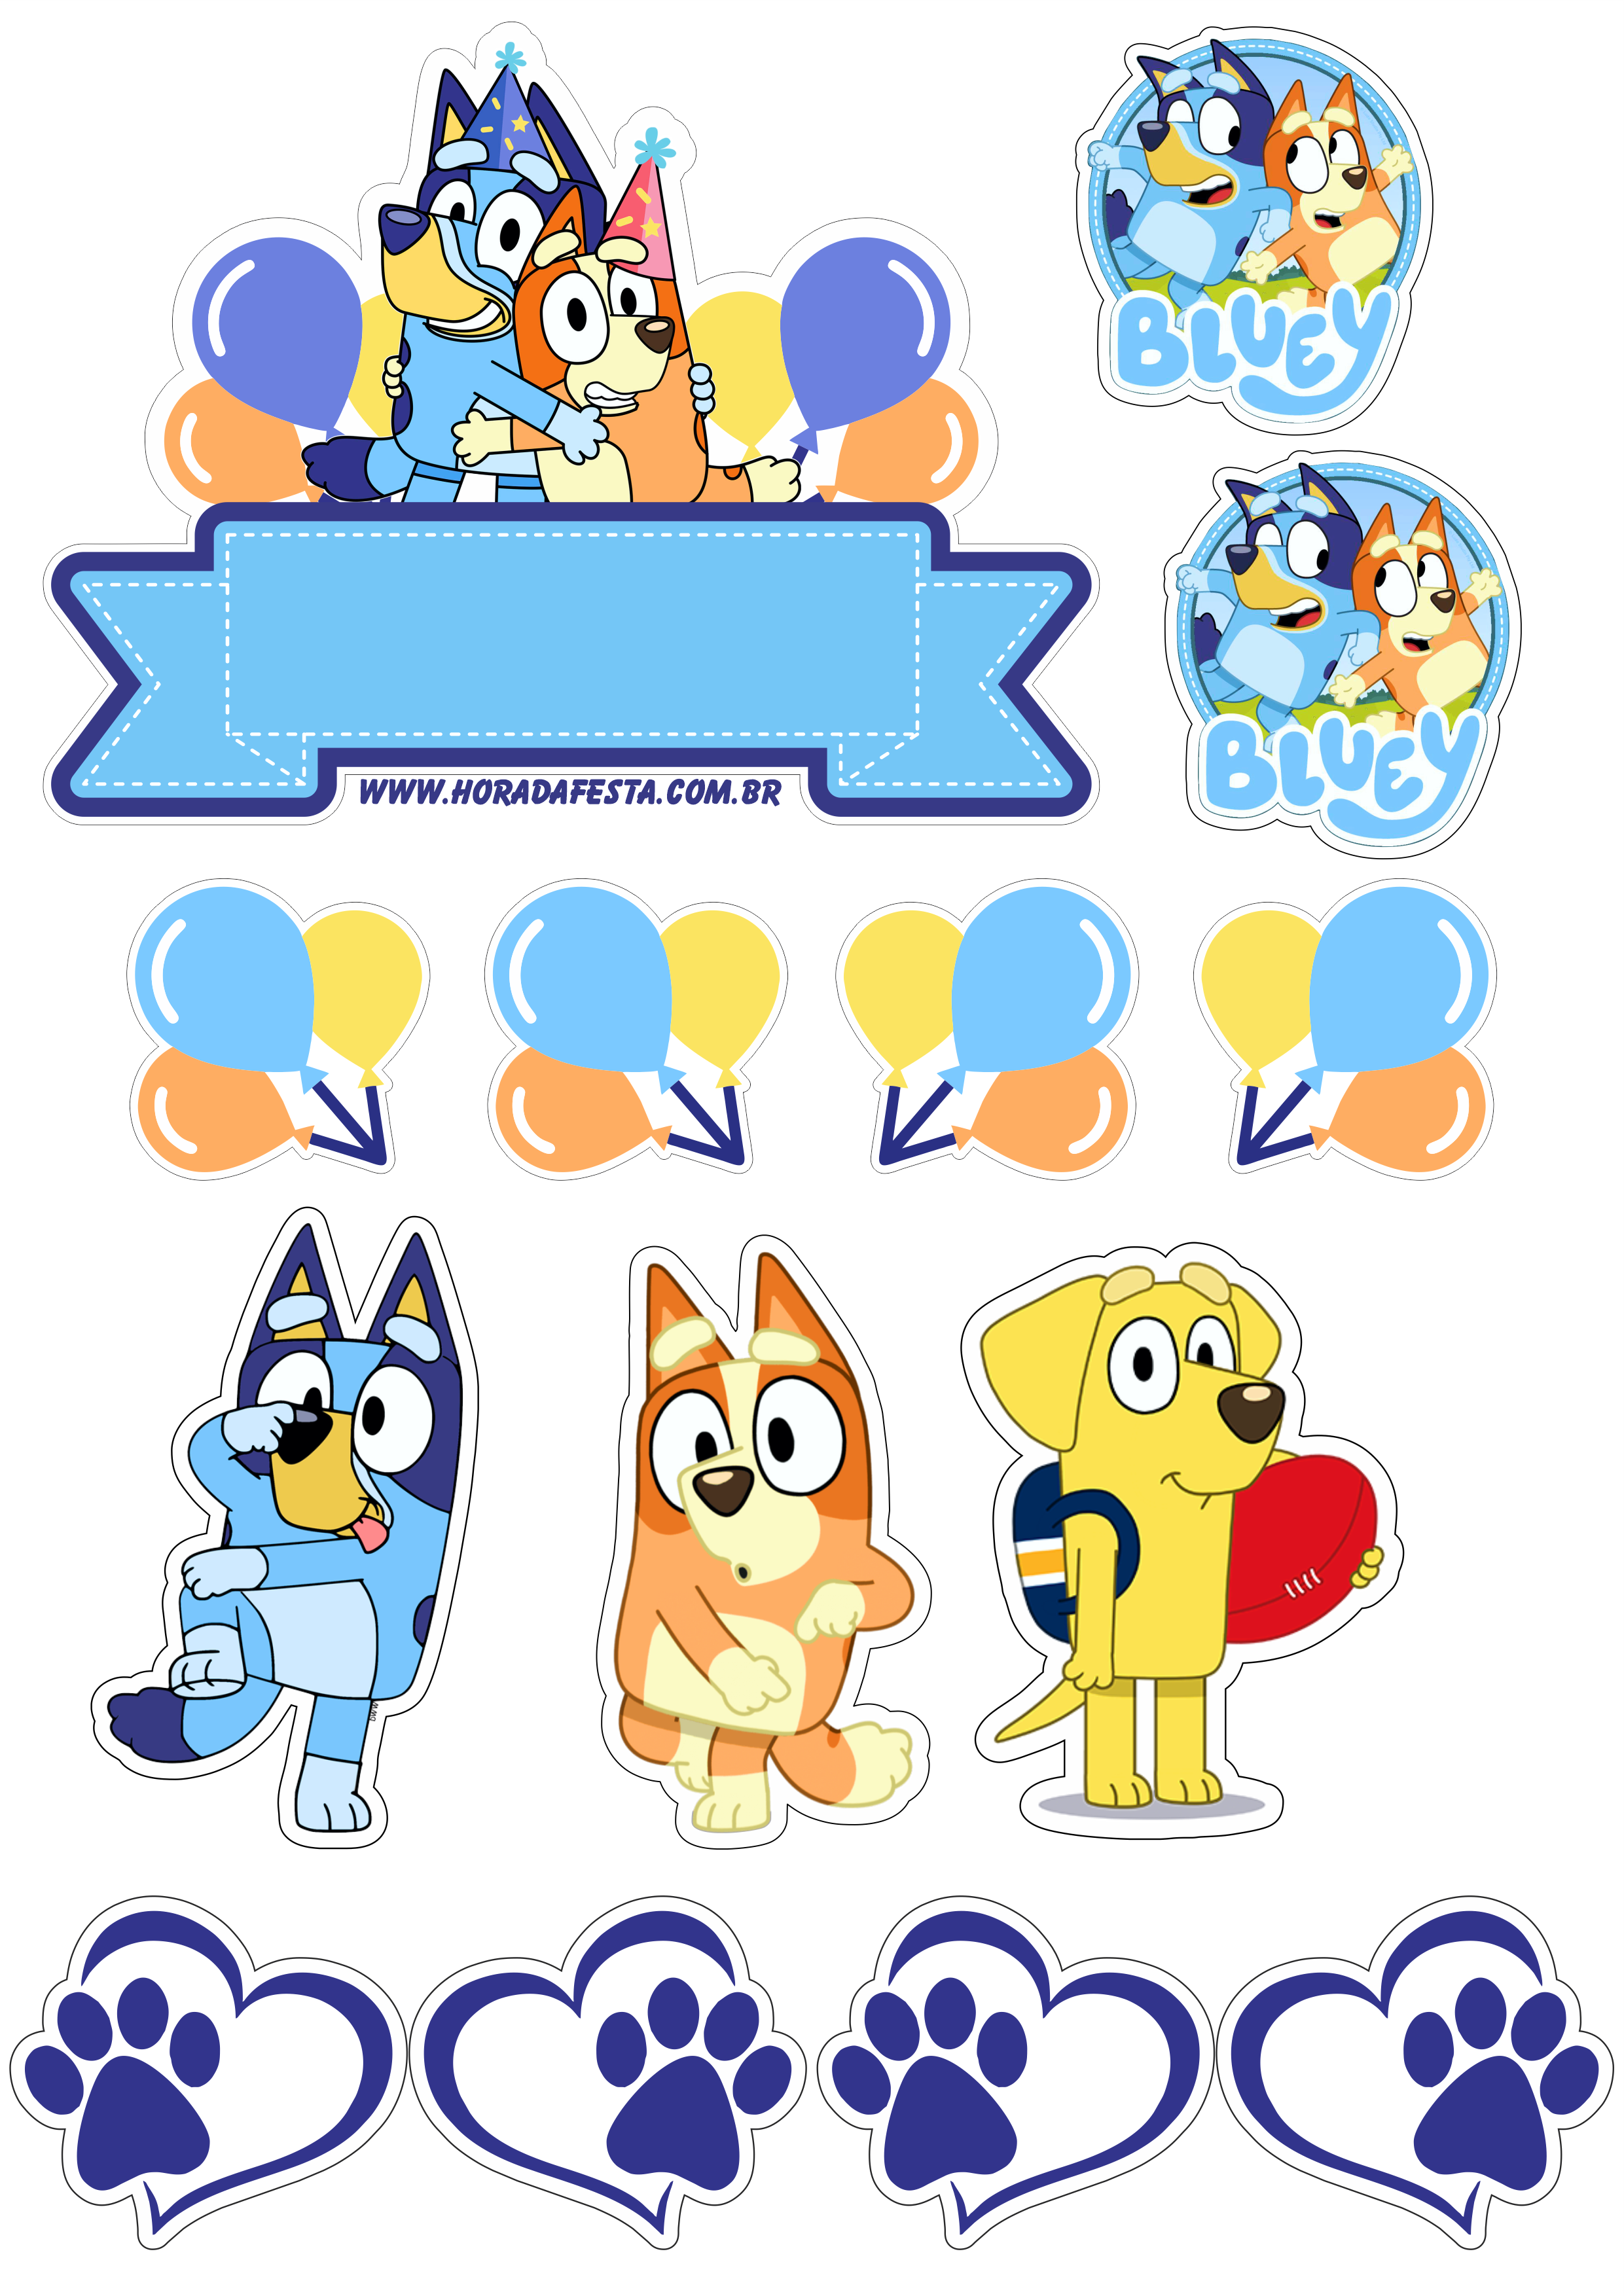 Topo de bolo para imprimir Bluey e sua turma desenho disney cachorrinhos aniversário infantil festa pronta decoração png